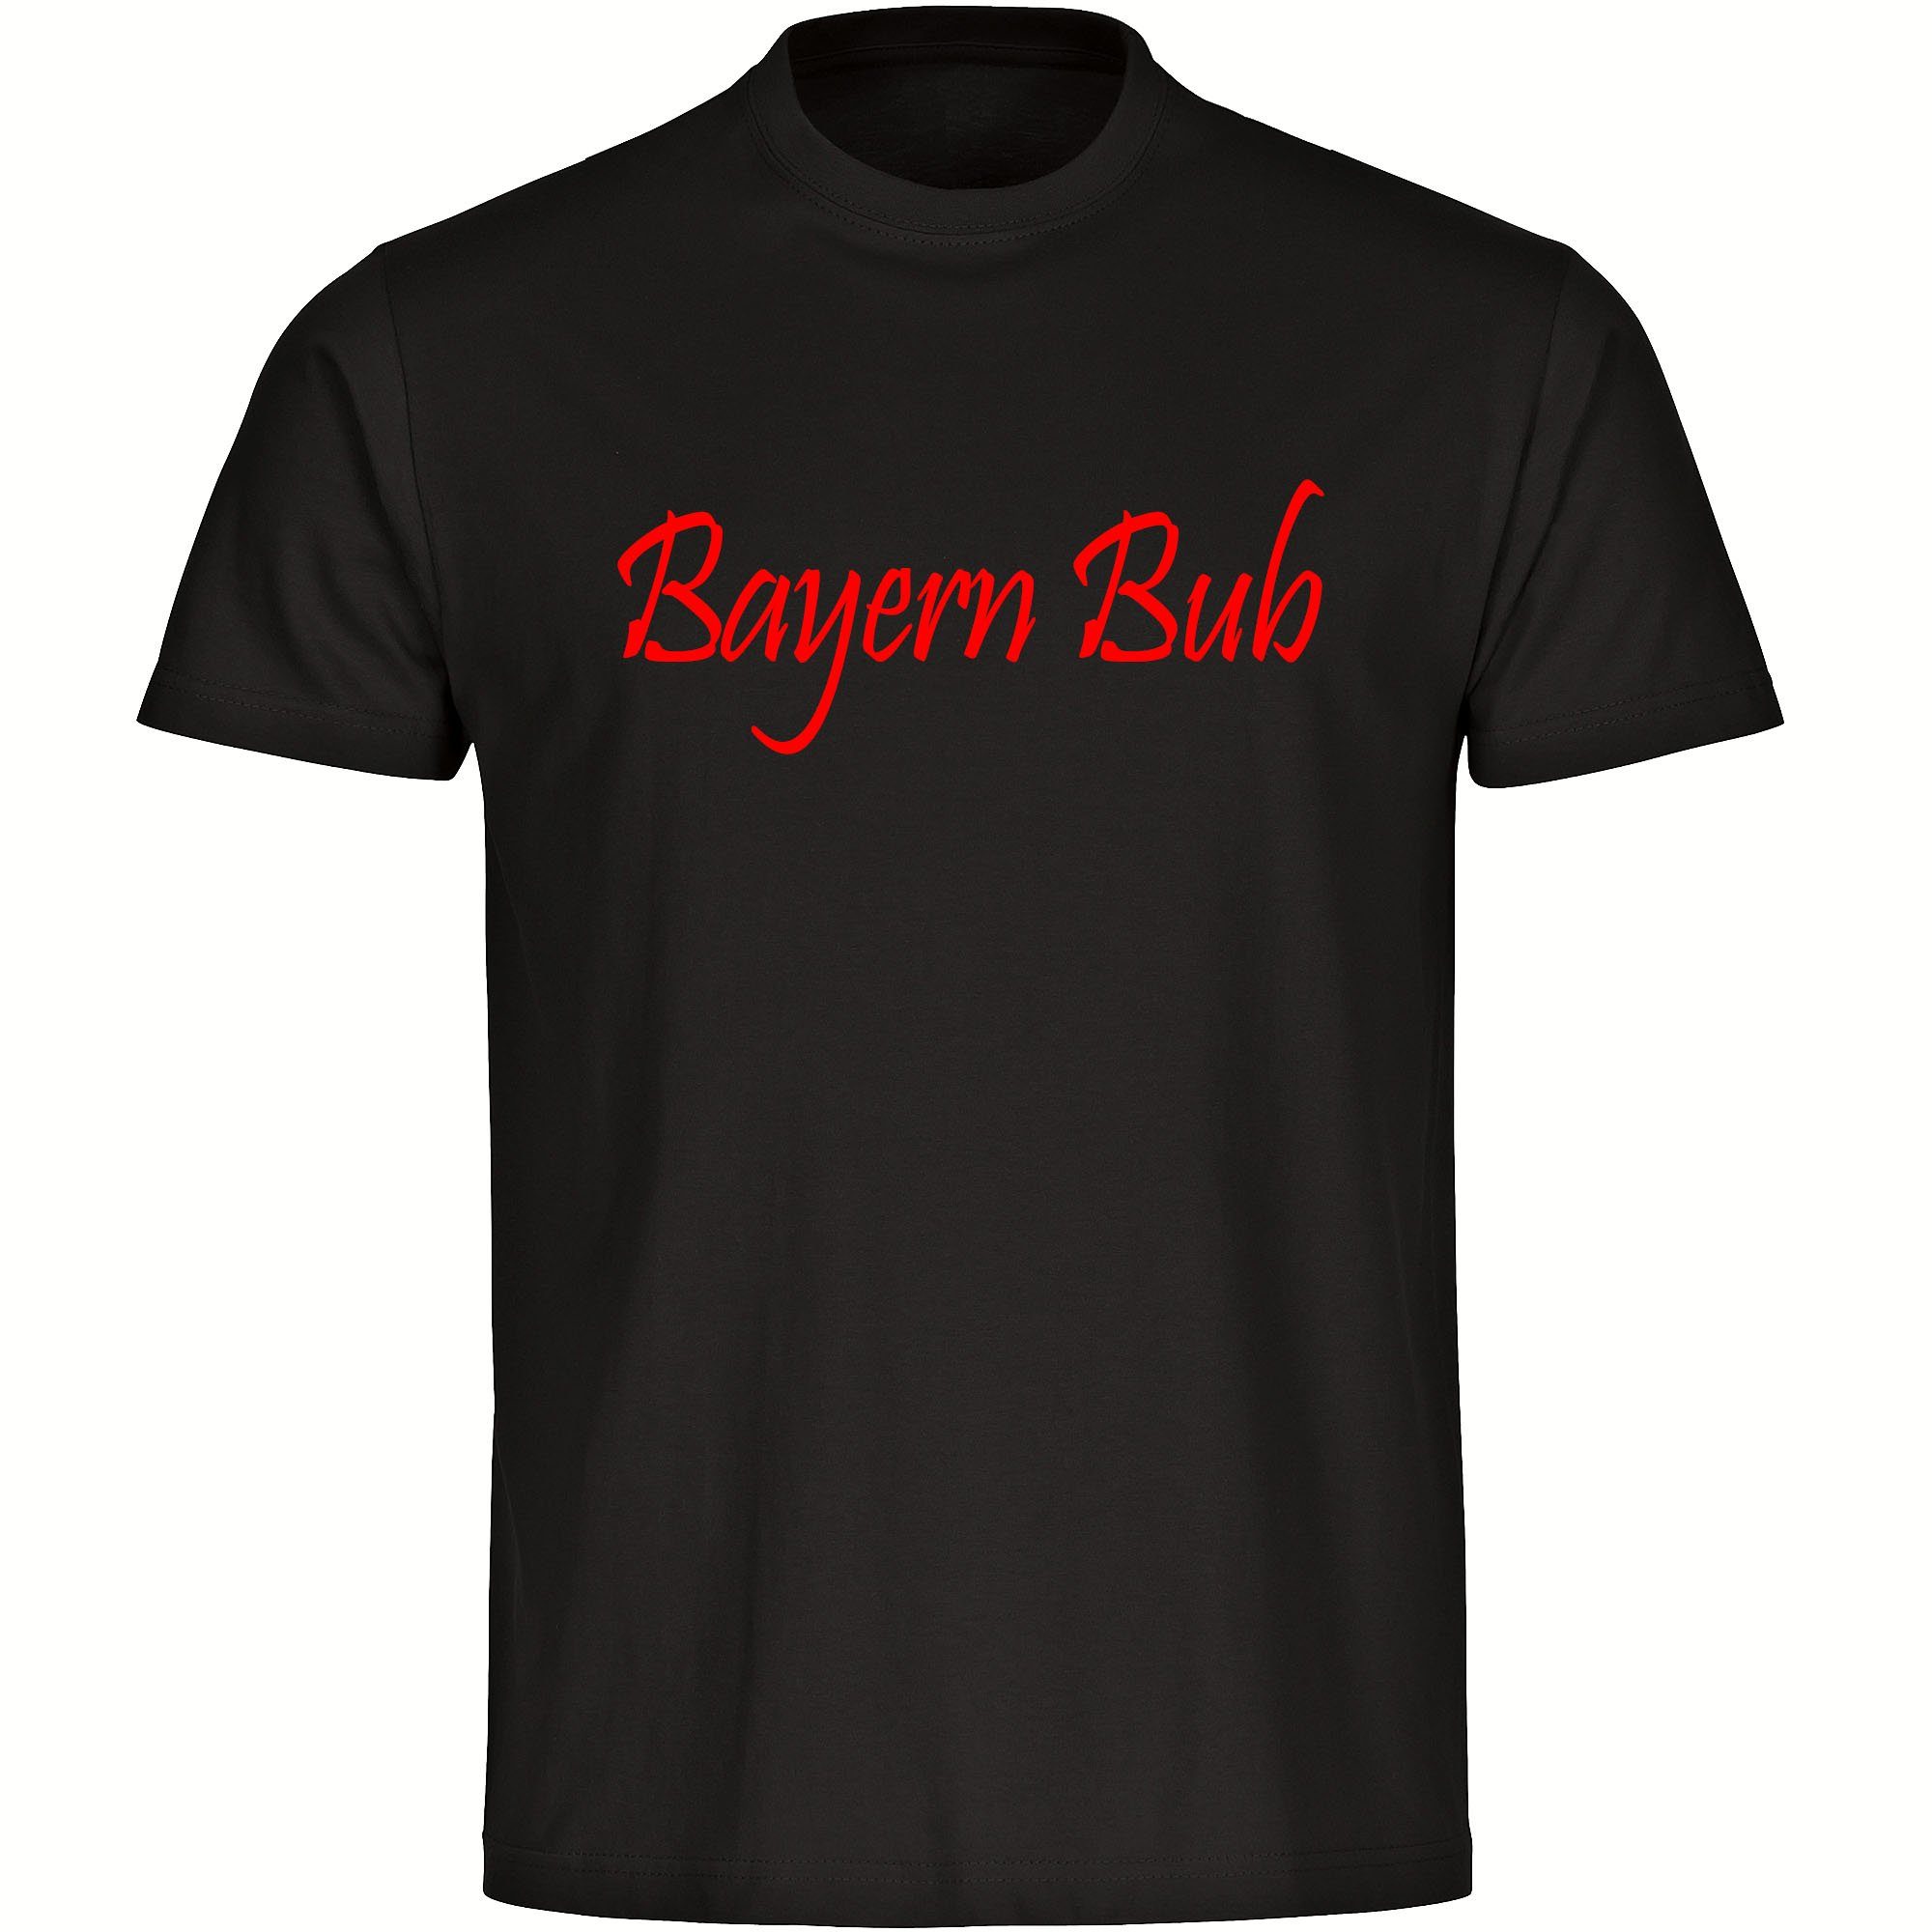 multifanshop T-Shirt Herren Bayern - Bayern Bub - Männer